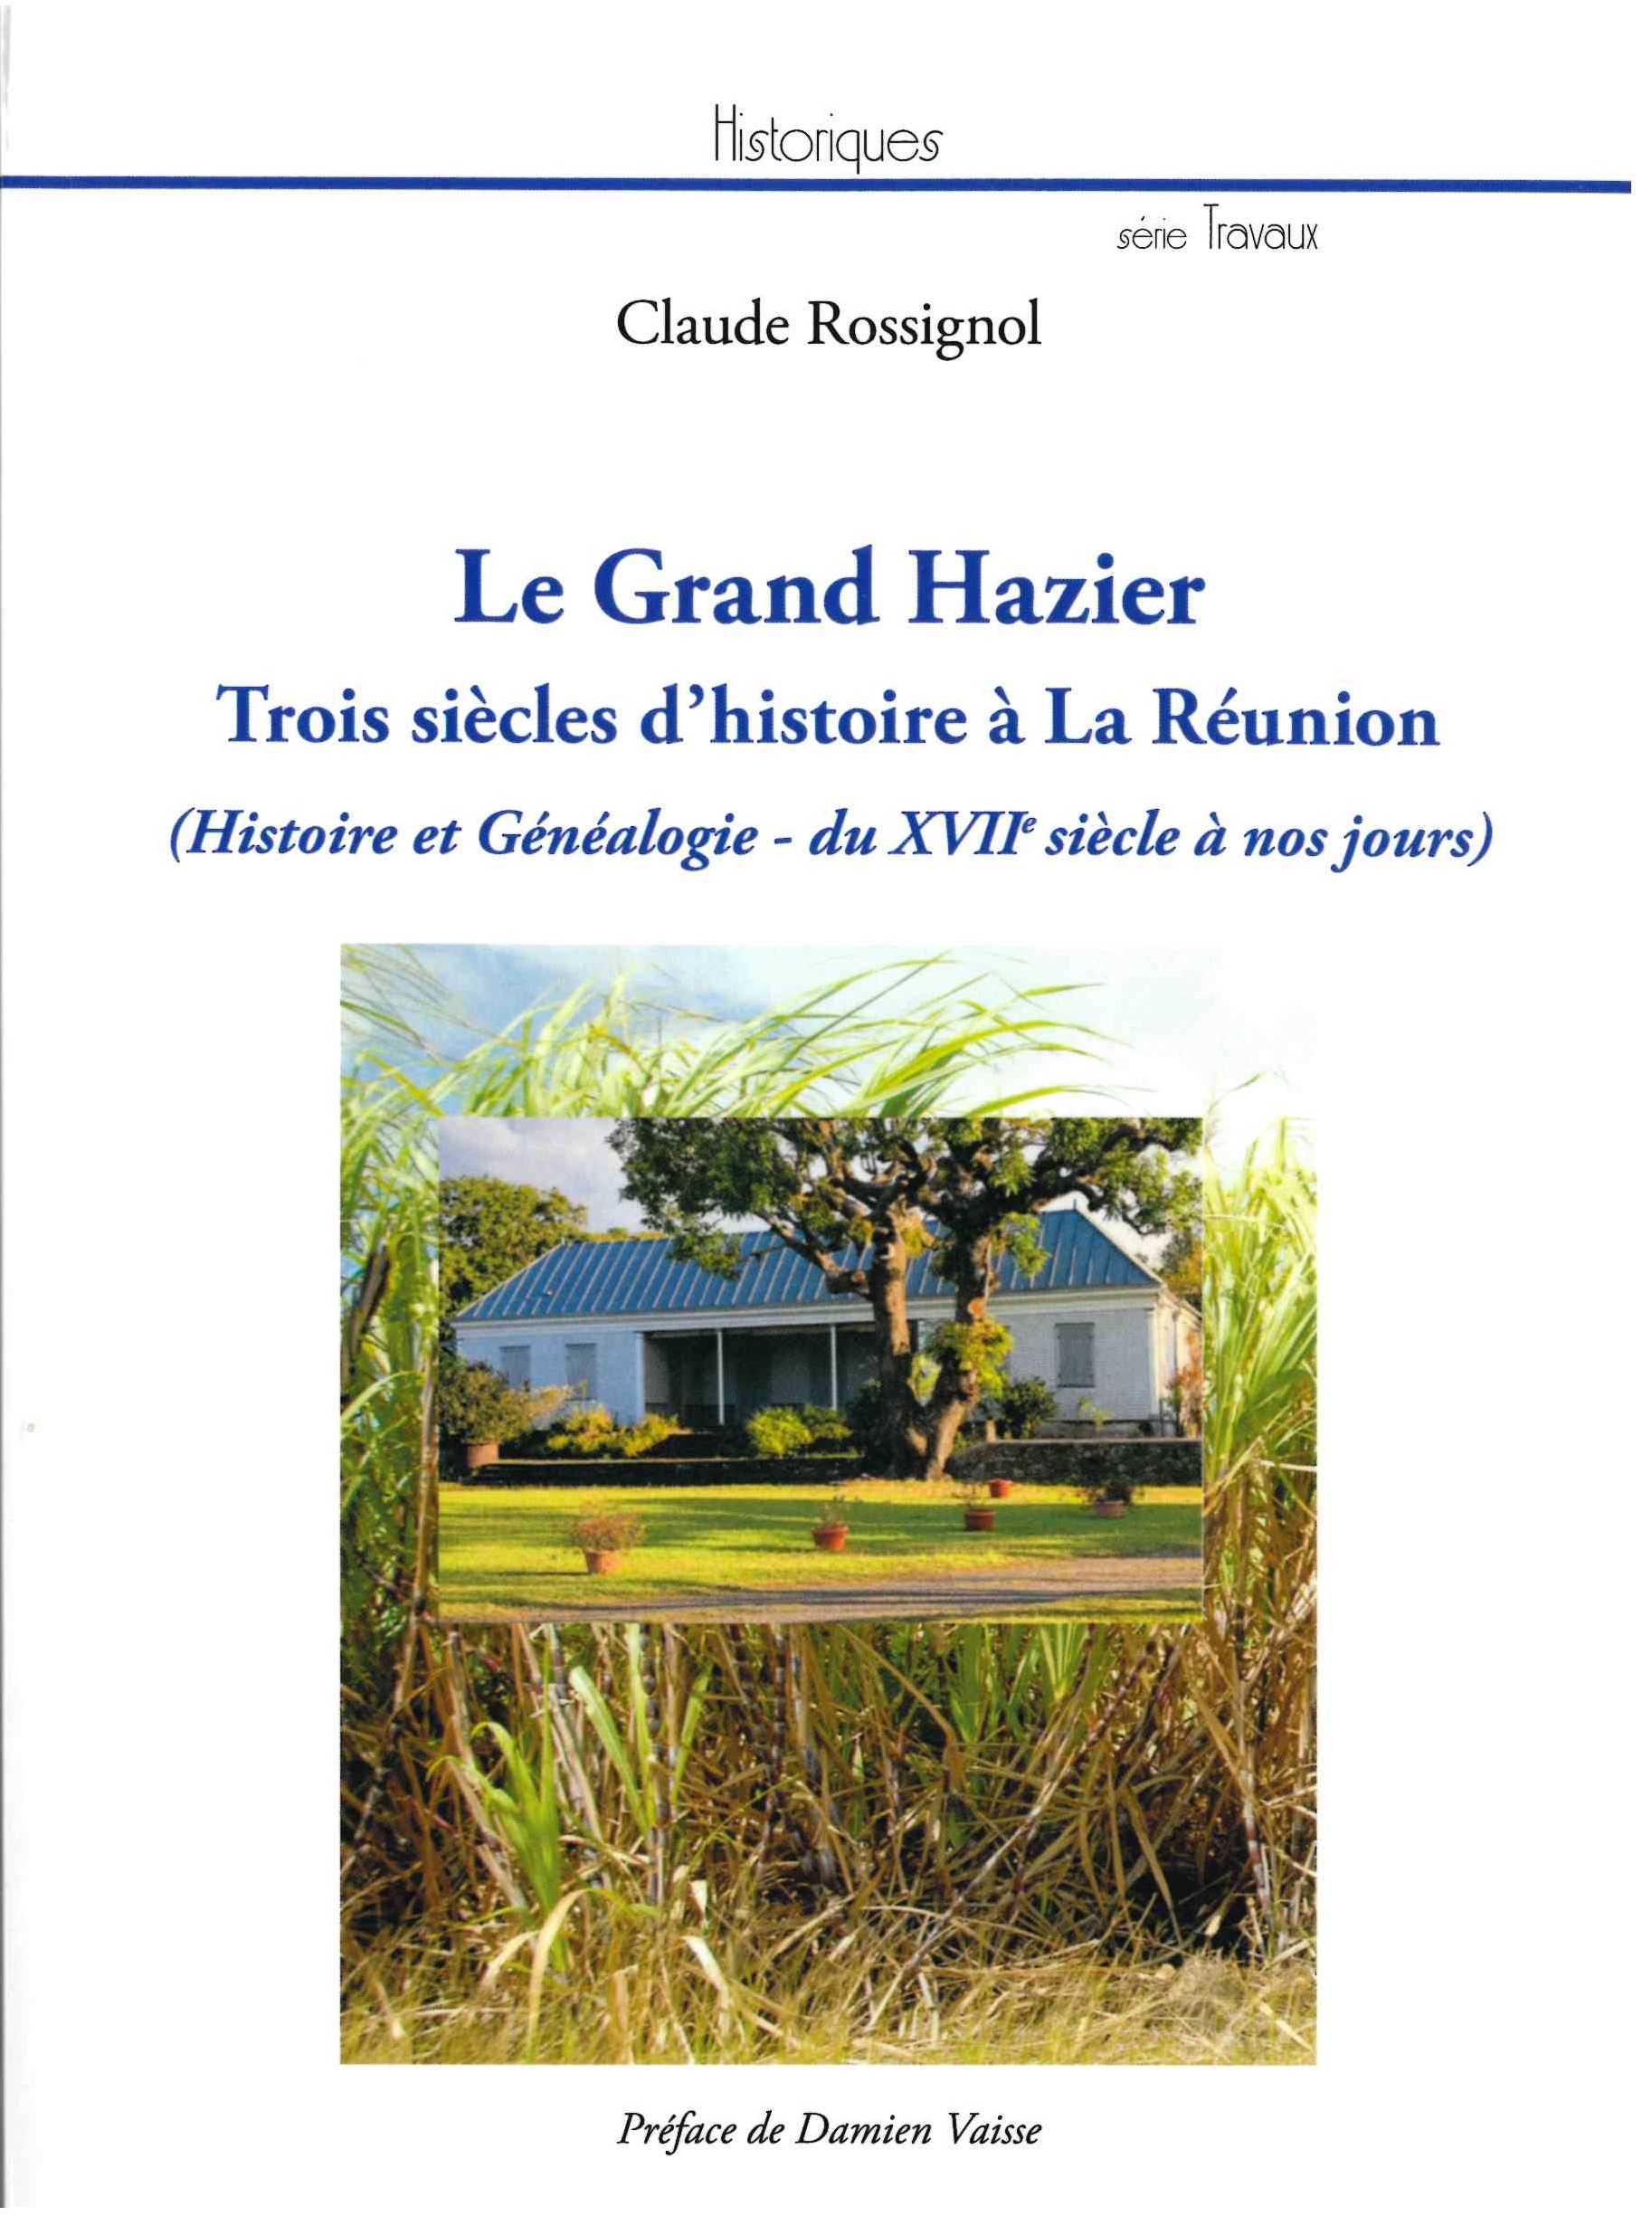 Rossignol (Claude), Le Grand Hazier : trois siècles d’histoire à La Réunion (histoire et généalogie, du 17e siècle à nos jours)